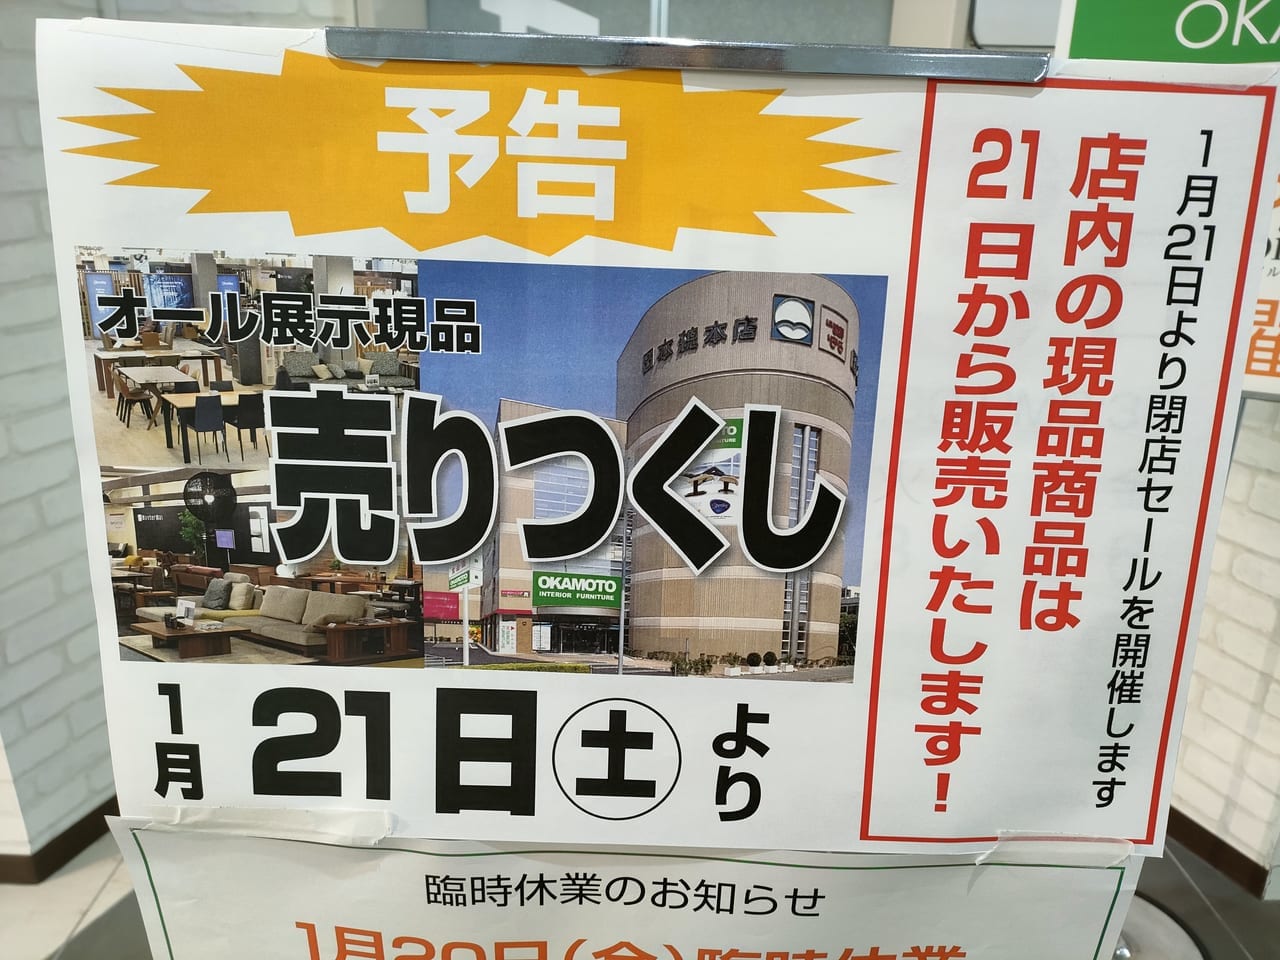 2023年2月28日「岡本総本店」完全閉店